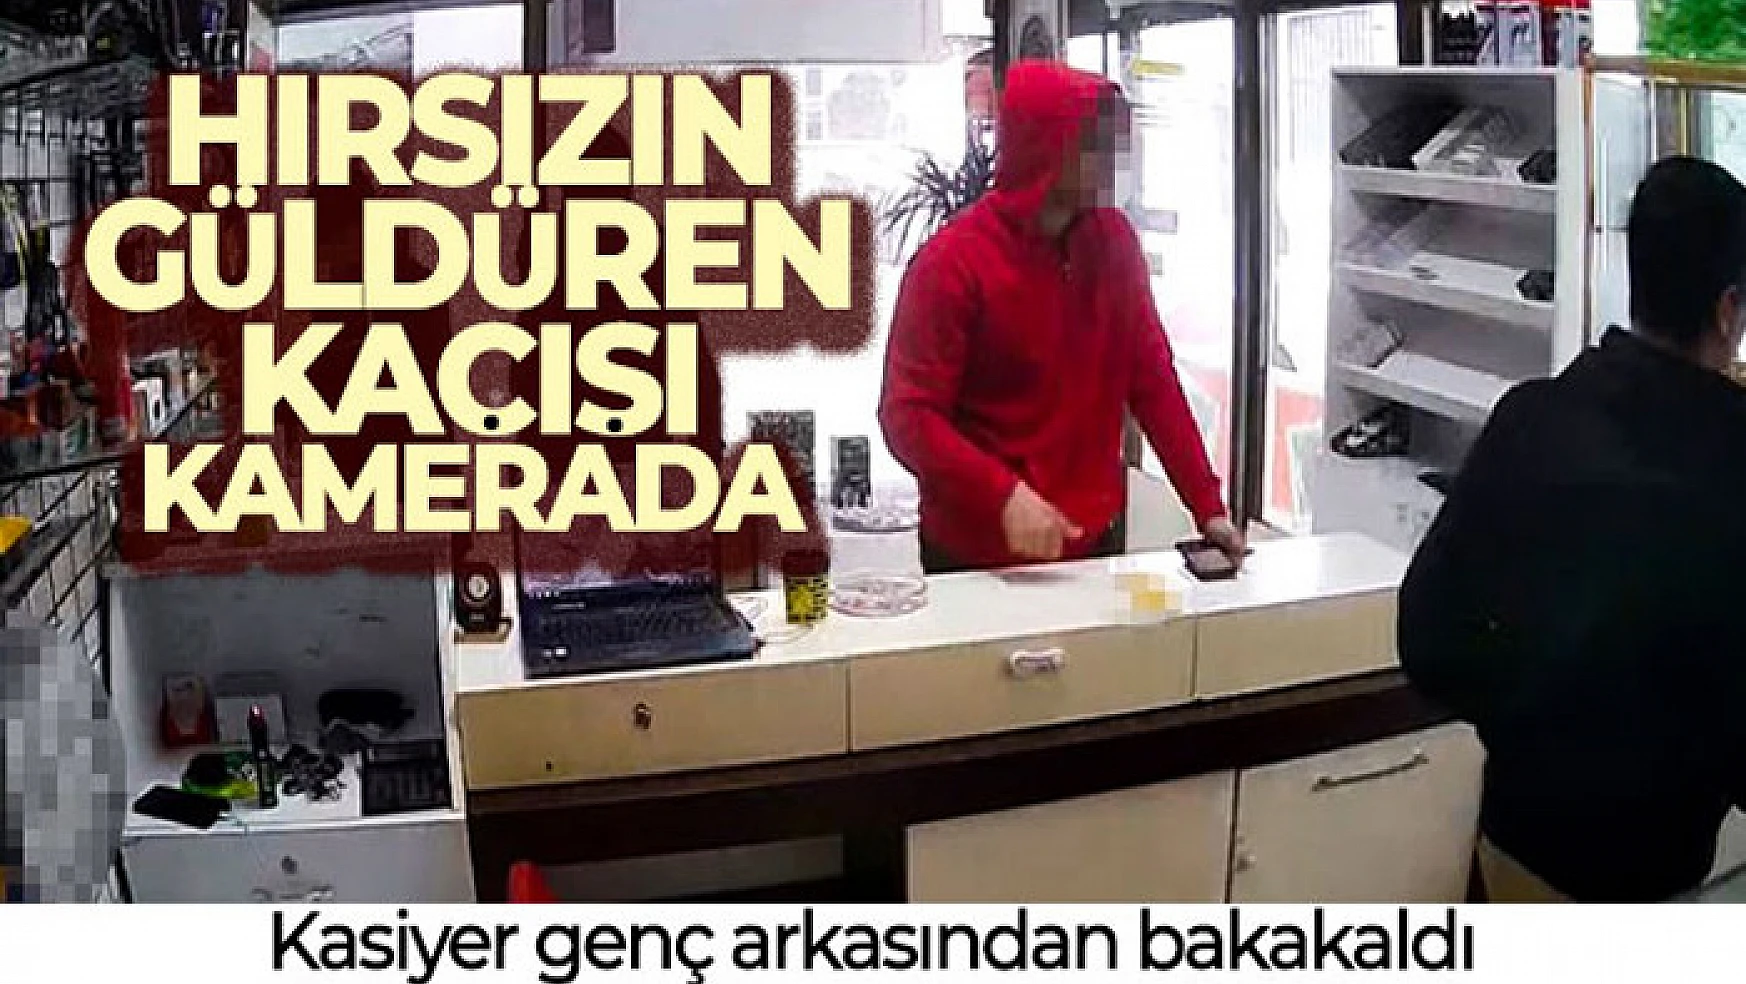 İstanbul'da hırsızın güldüren kaçışı kamerada